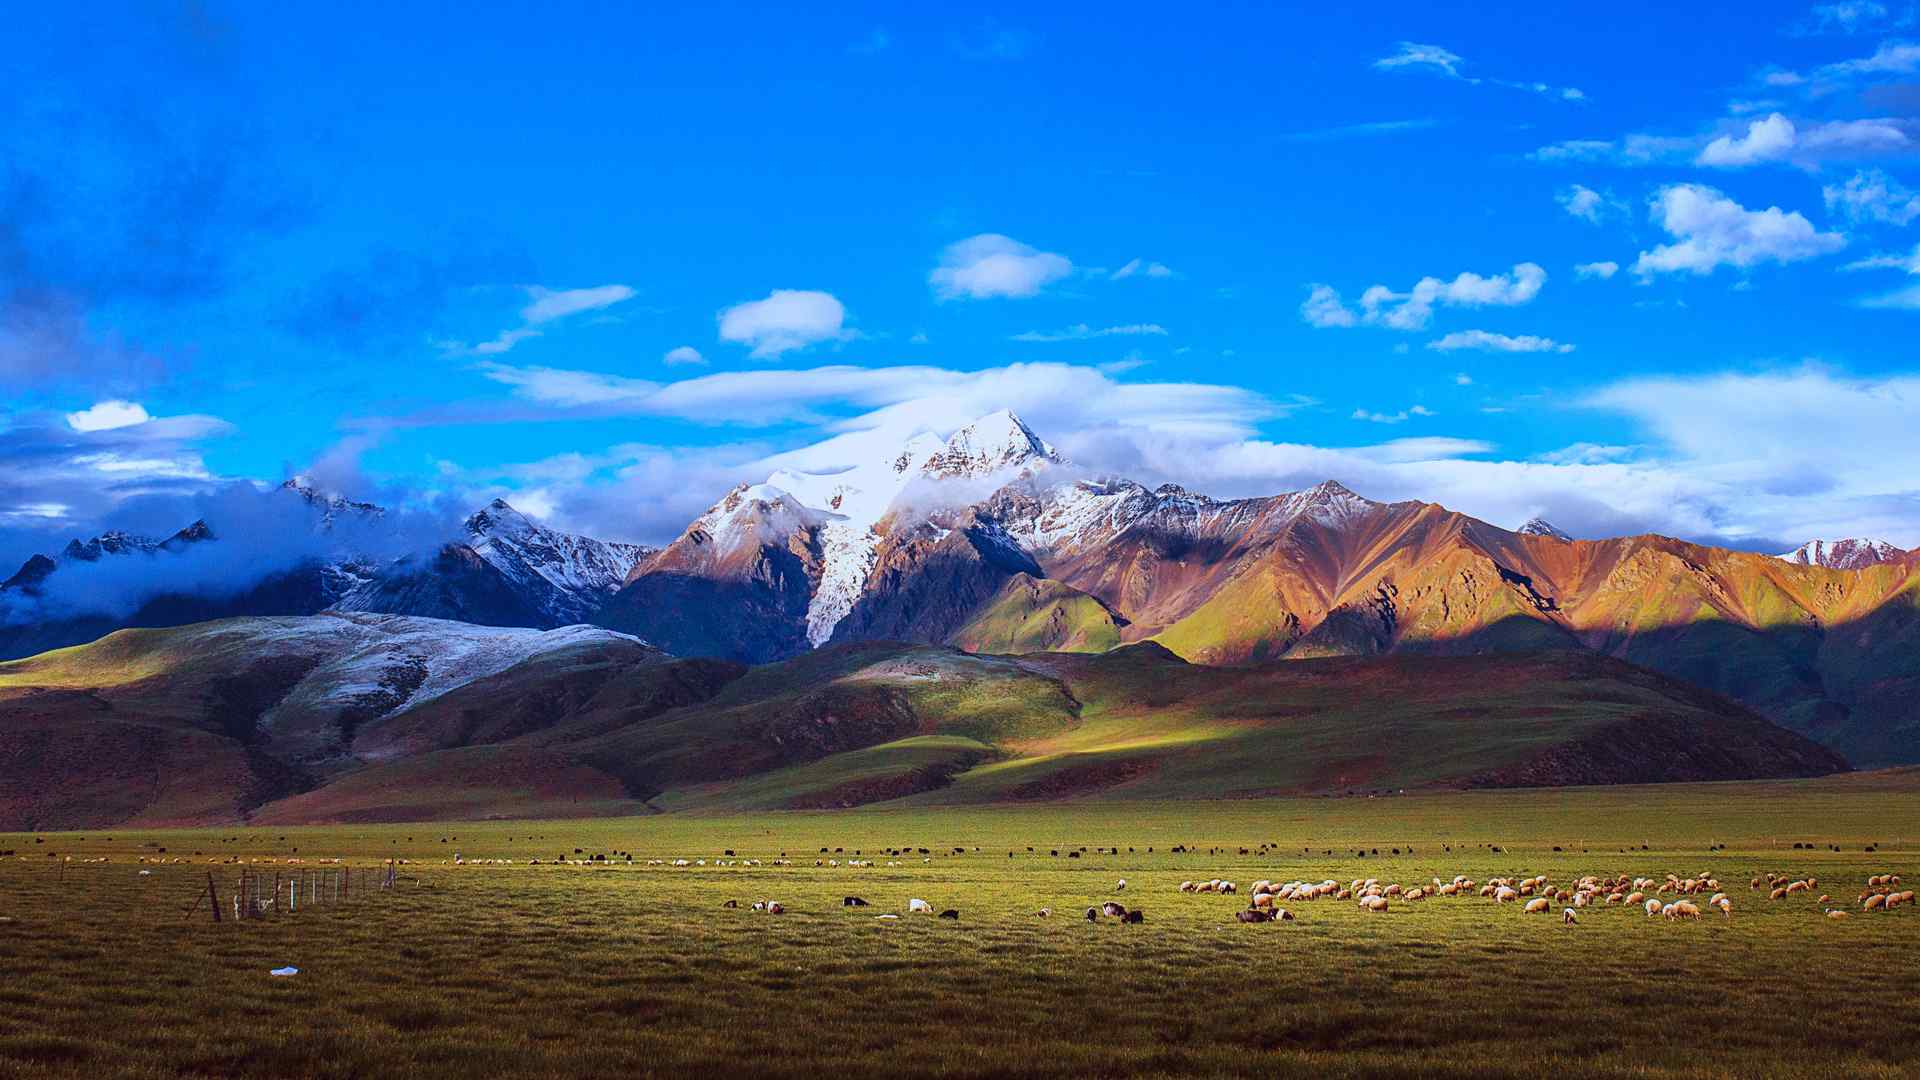 西藏羊八井草原天空羊群绝美风景桌面壁纸